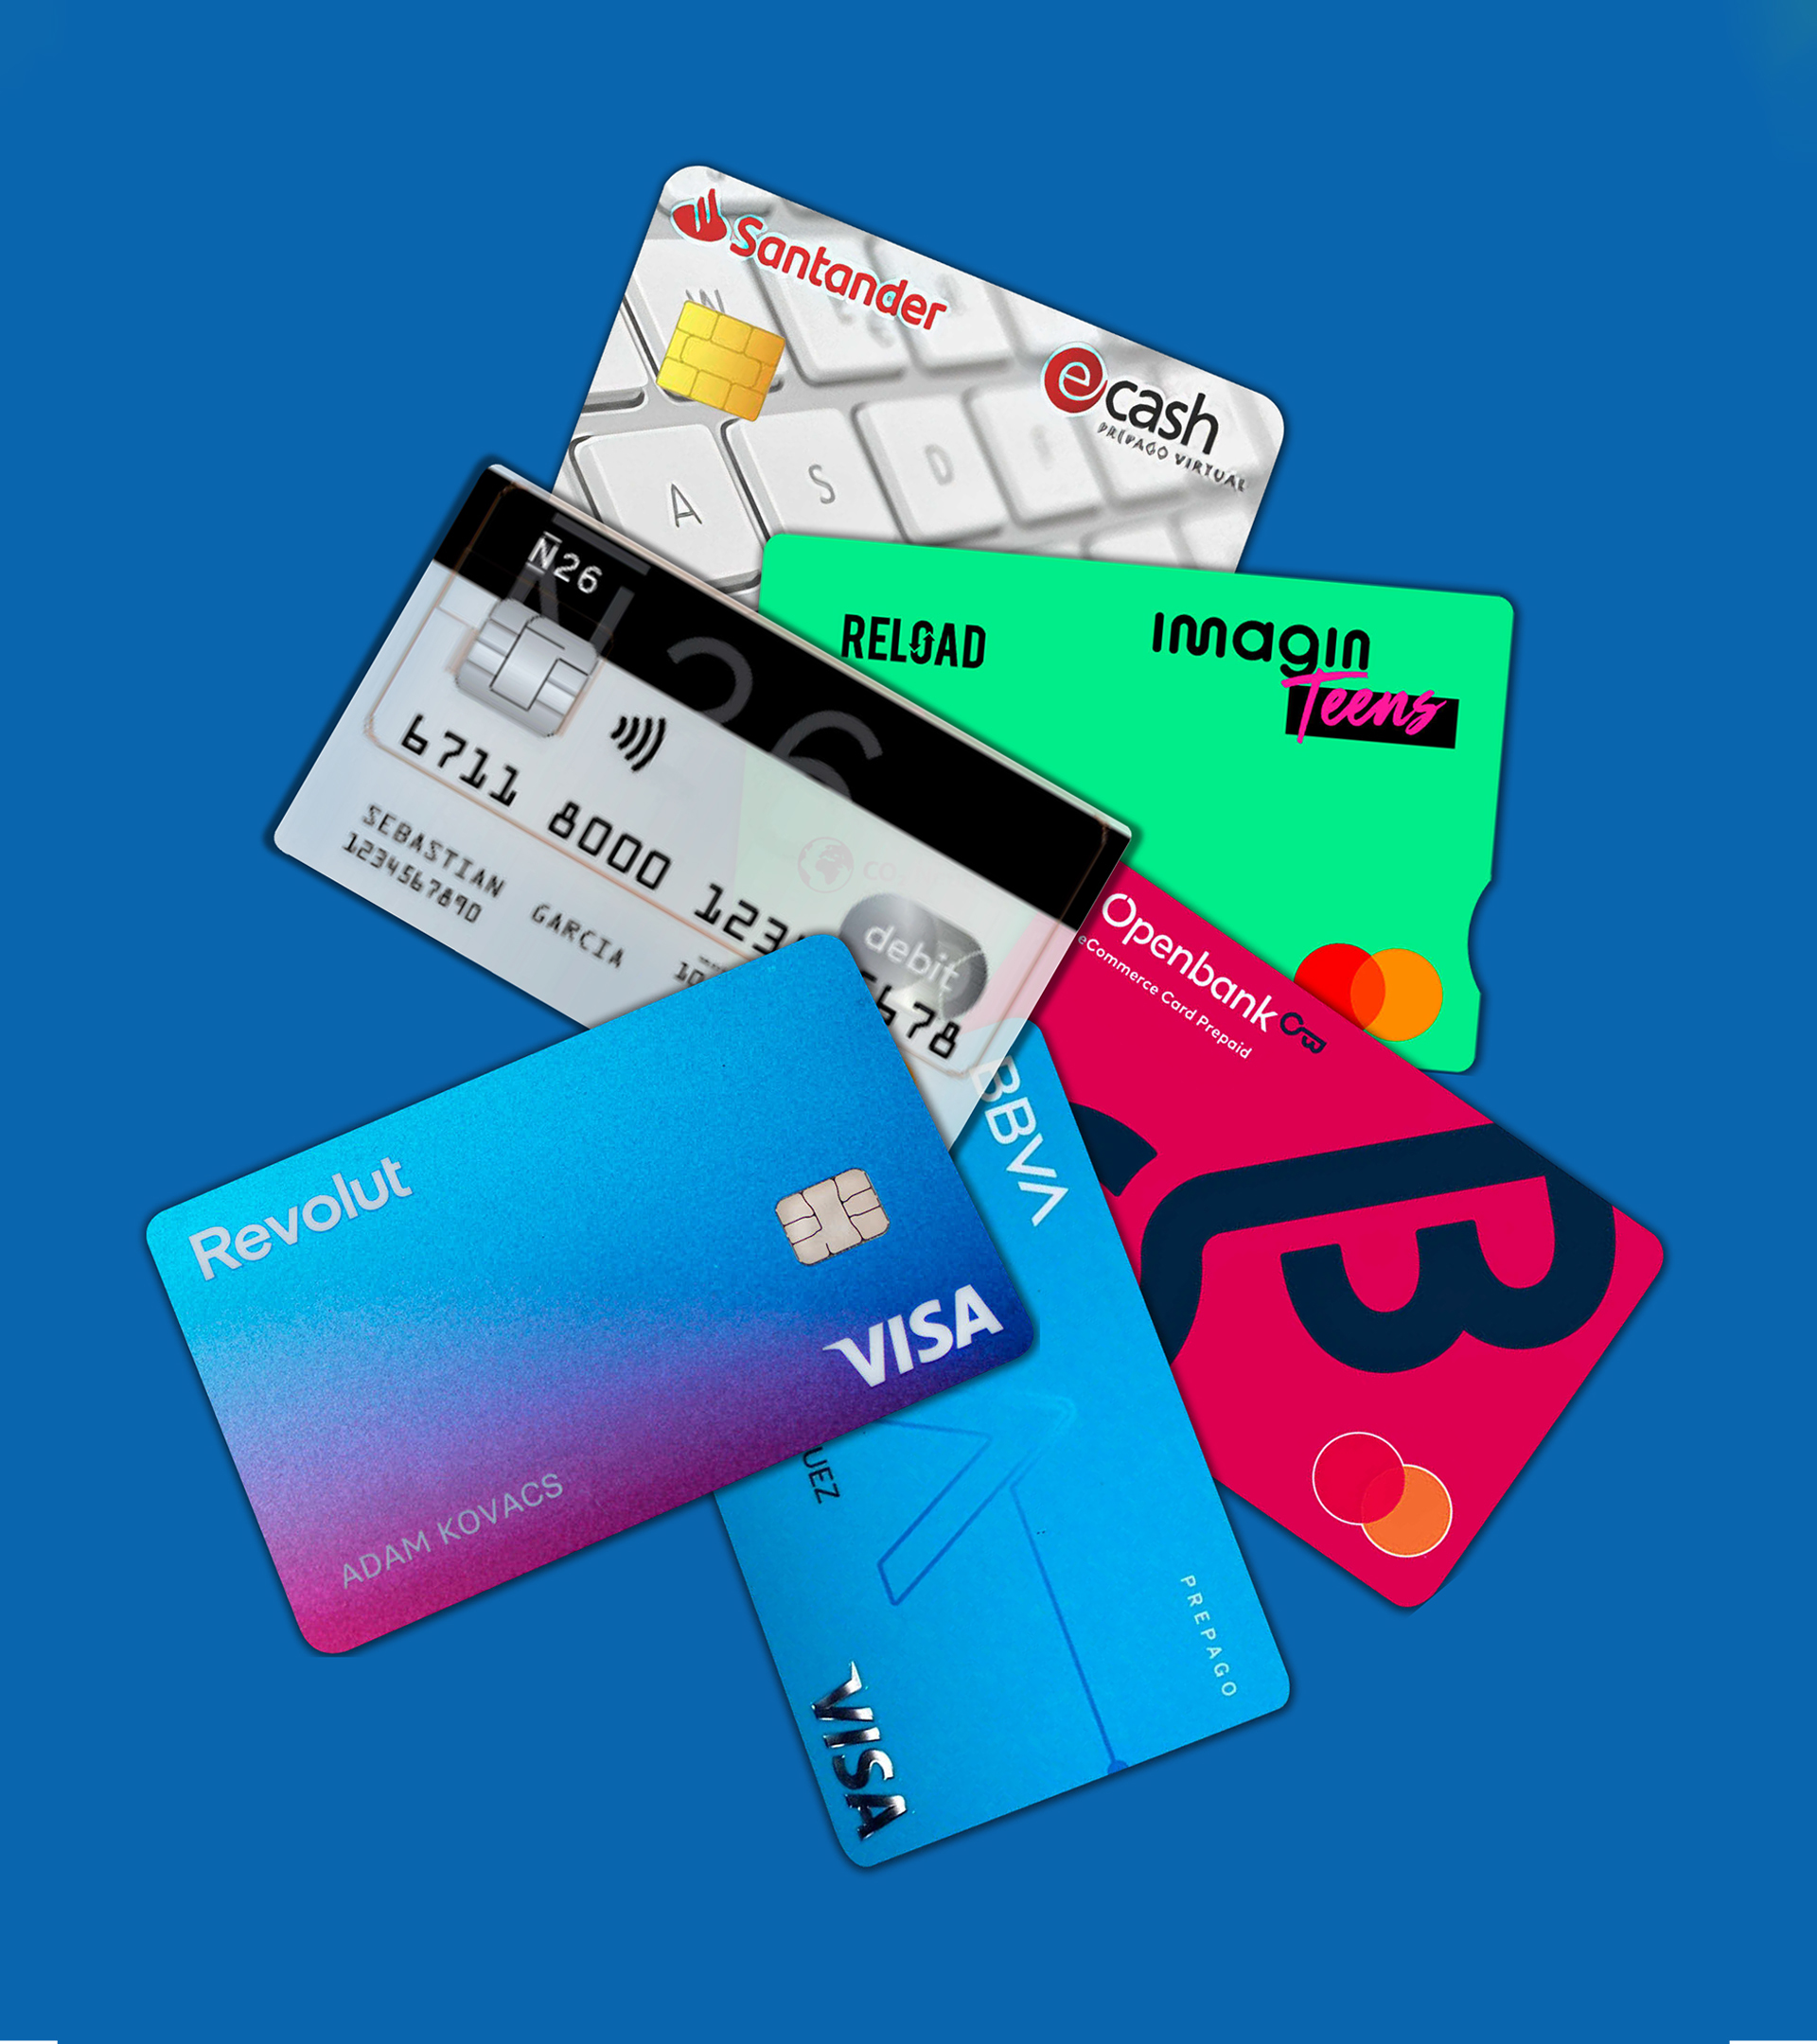 Recargar y gastar: as son las tarjetas de crdito prepago que se abren paso entre viajeros que no quieren comisiones